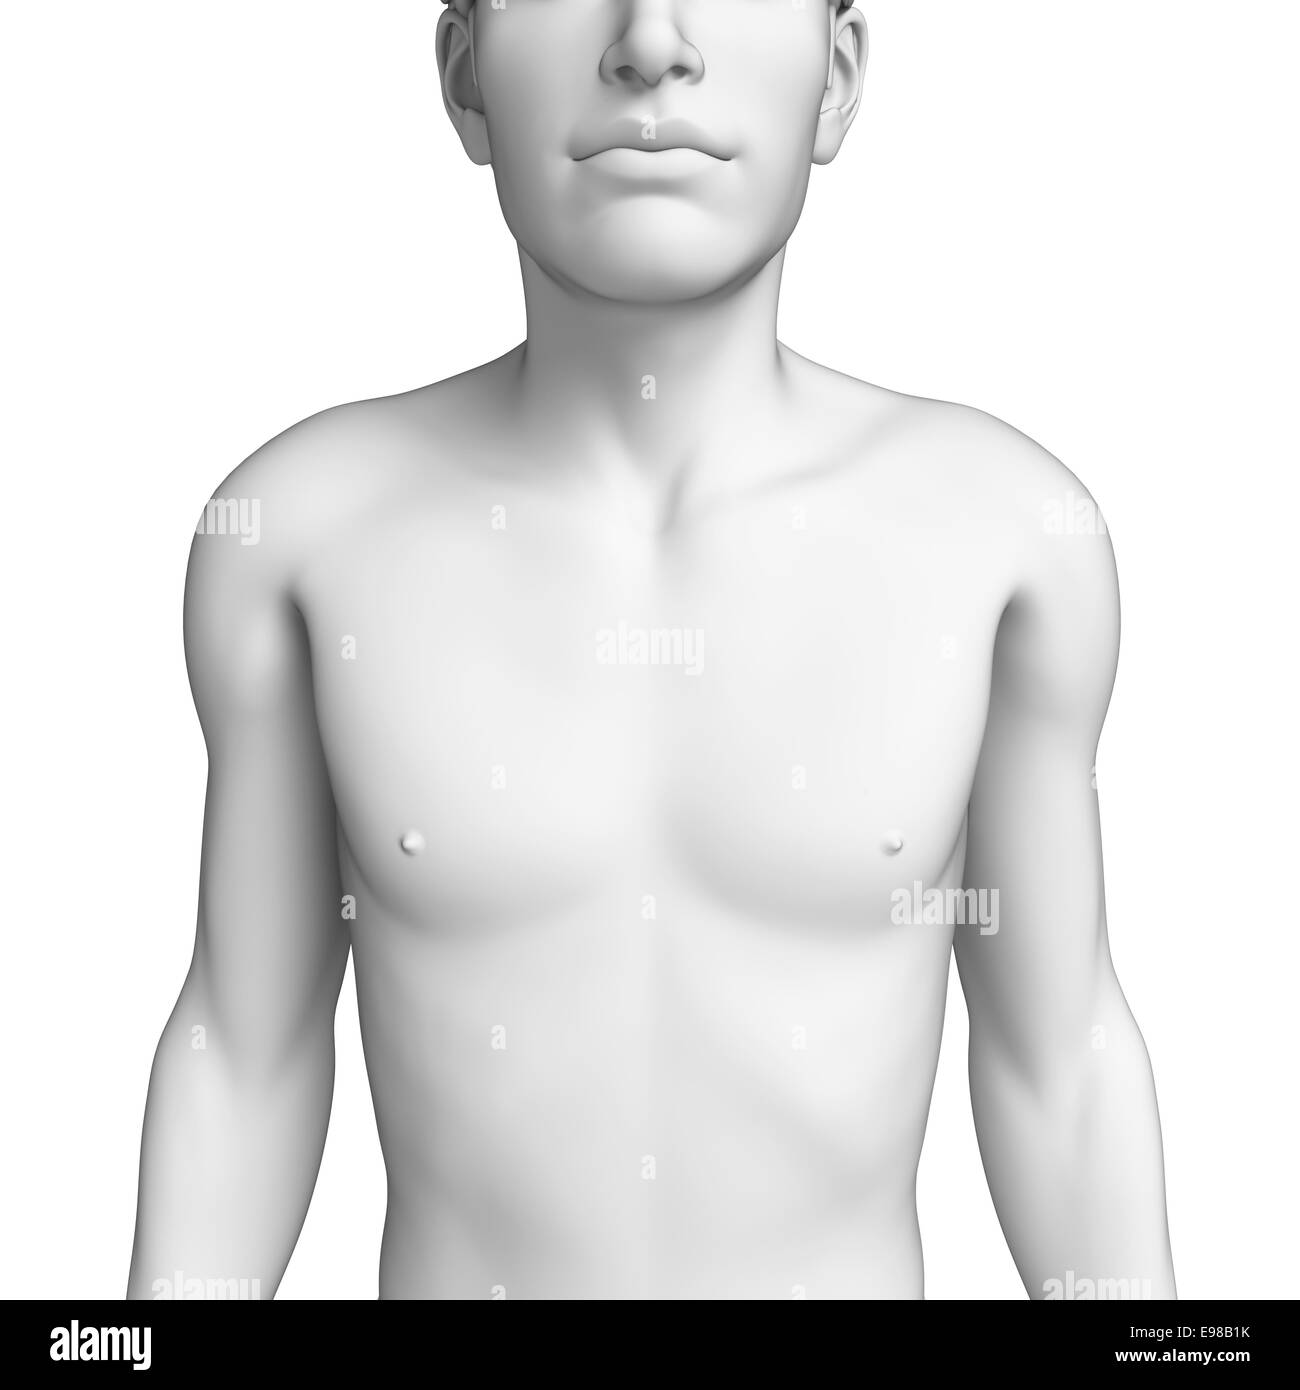 https://c8.alamy.com/comp/E98B1K/illustration-of-male-chest-anatomy-artwork-E98B1K.jpg